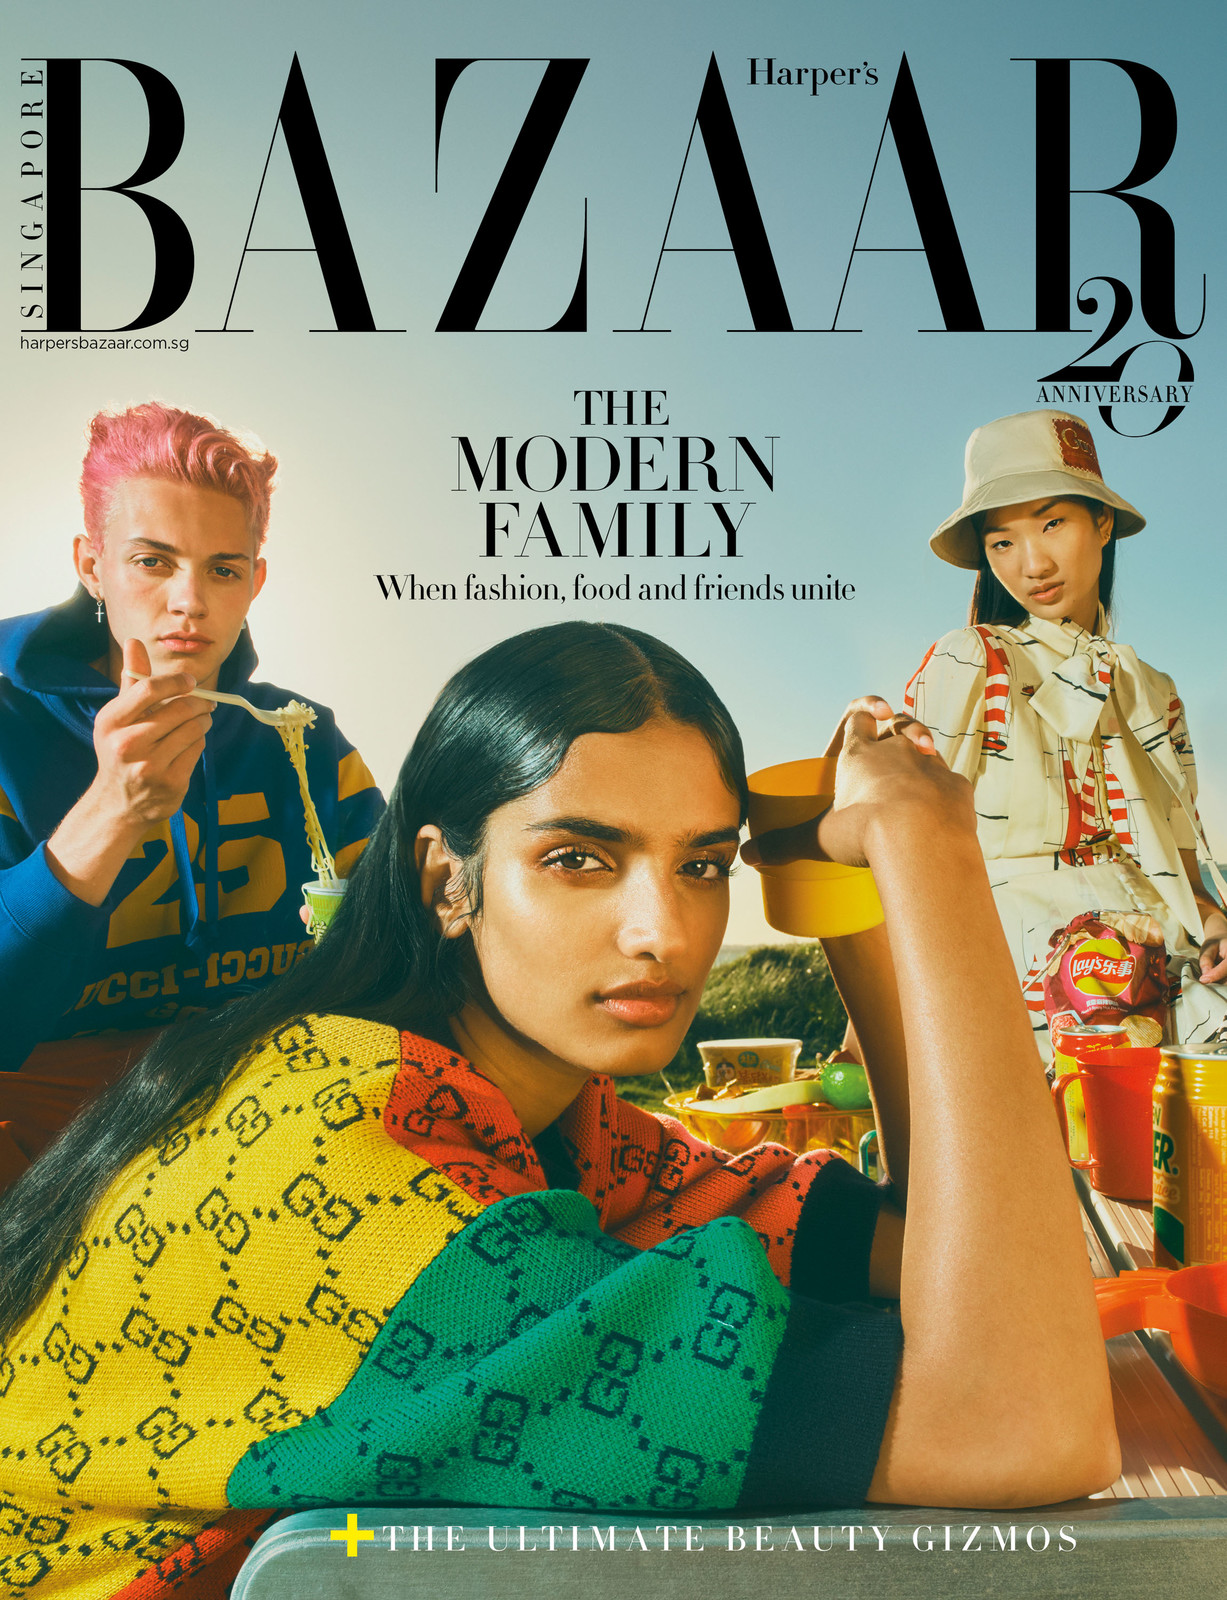 The Modern Family - Harper's Bazaar Singapore